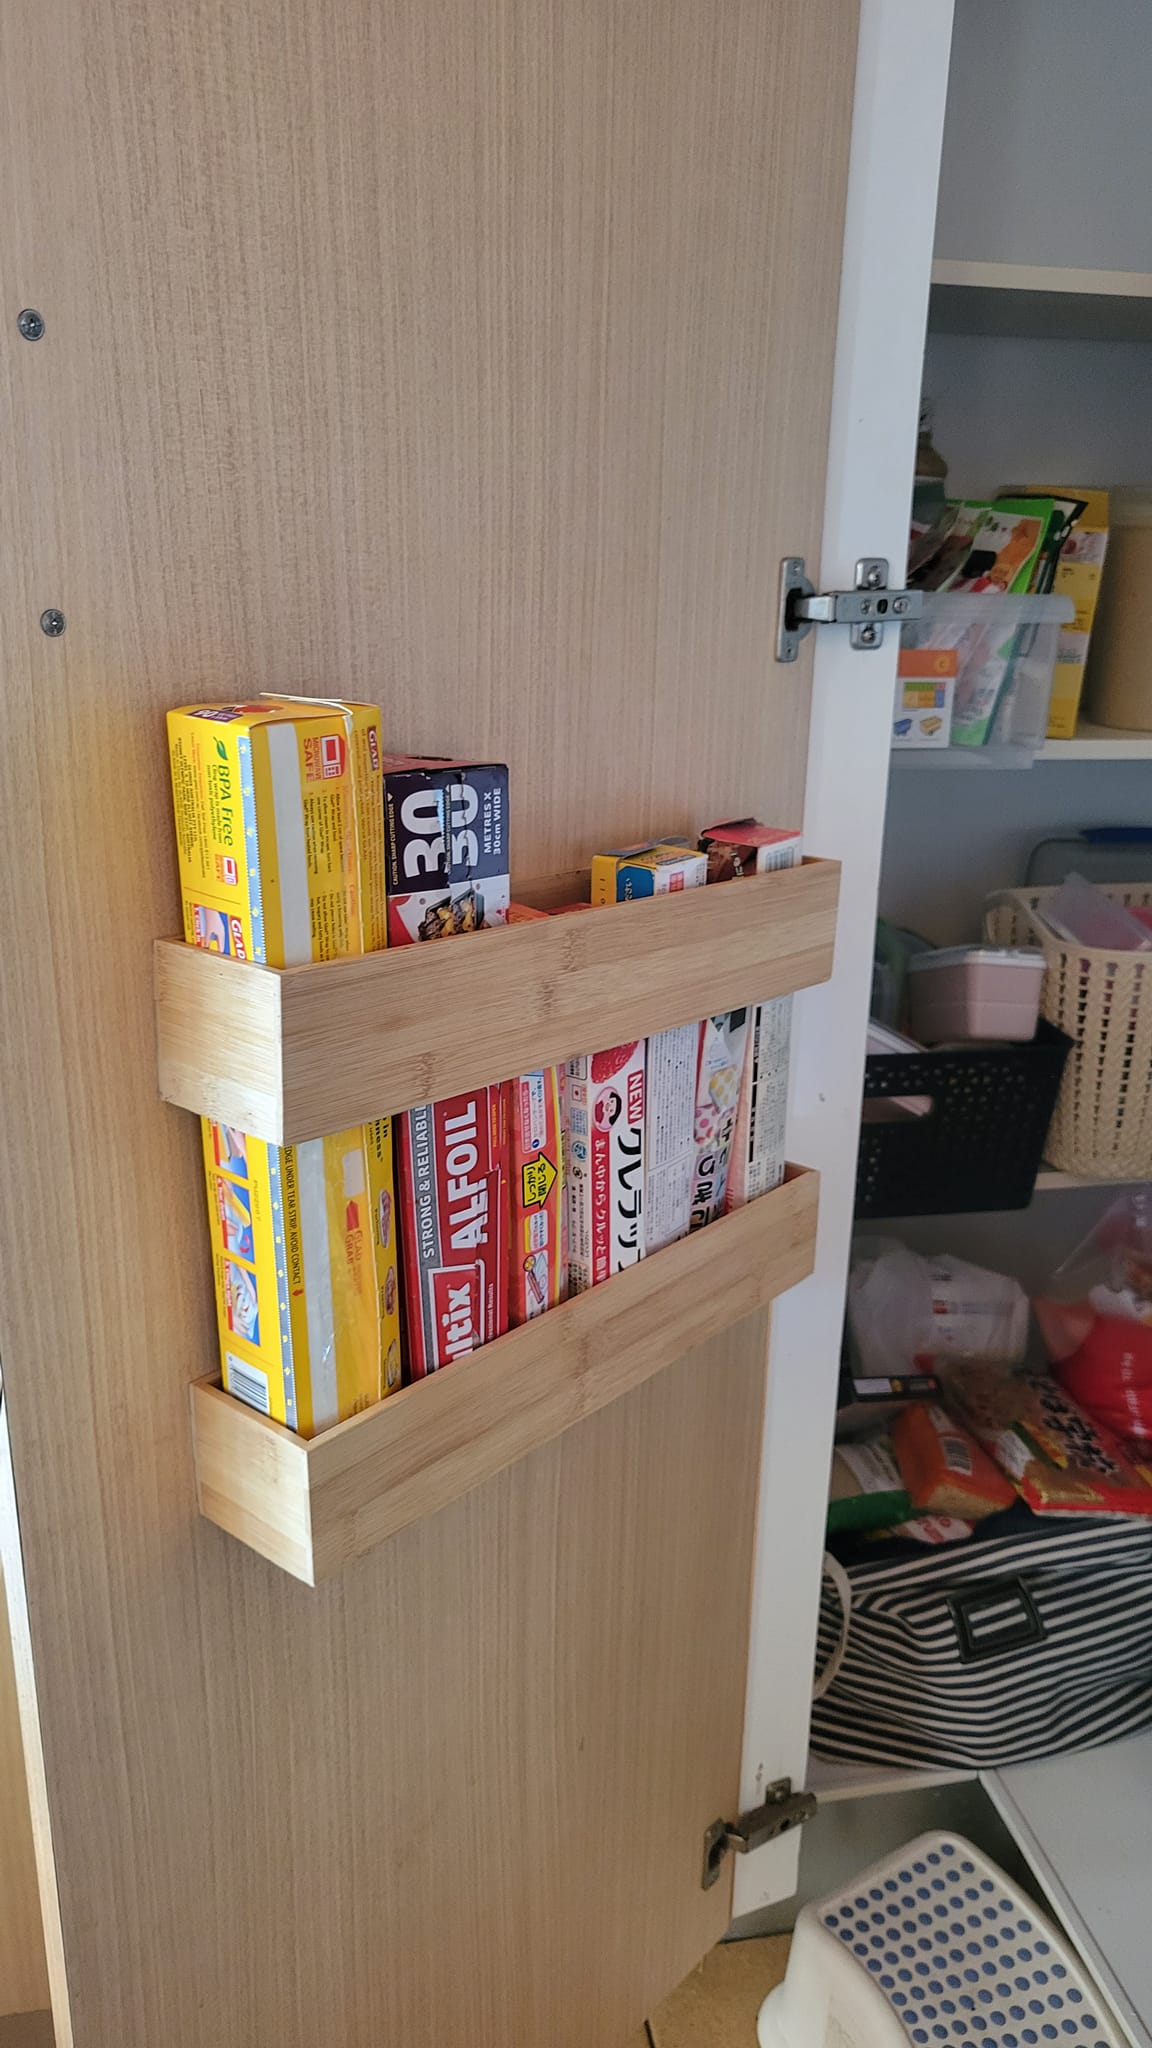 Kmart hack - kitchen wrap storage idea